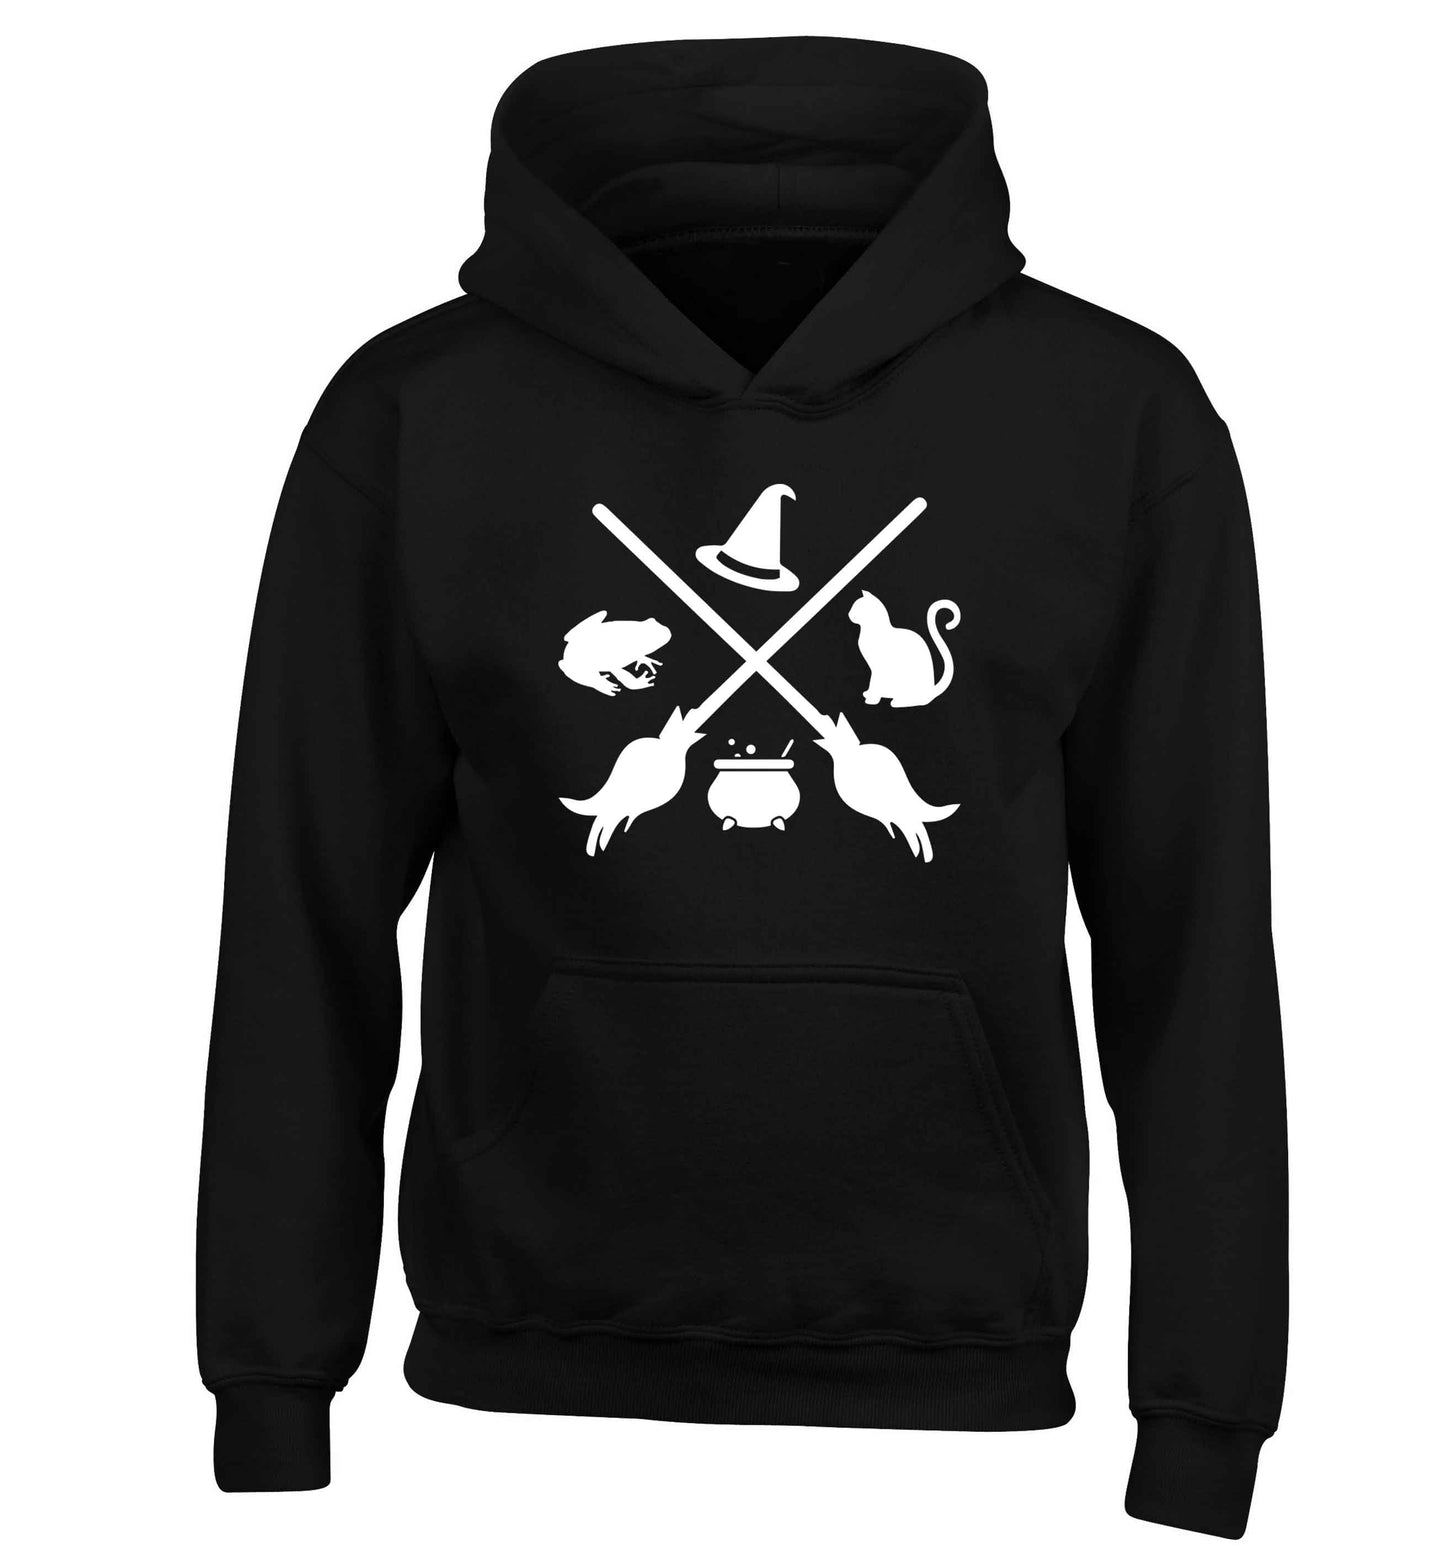 Witch symbol children's black hoodie 12-13 Years